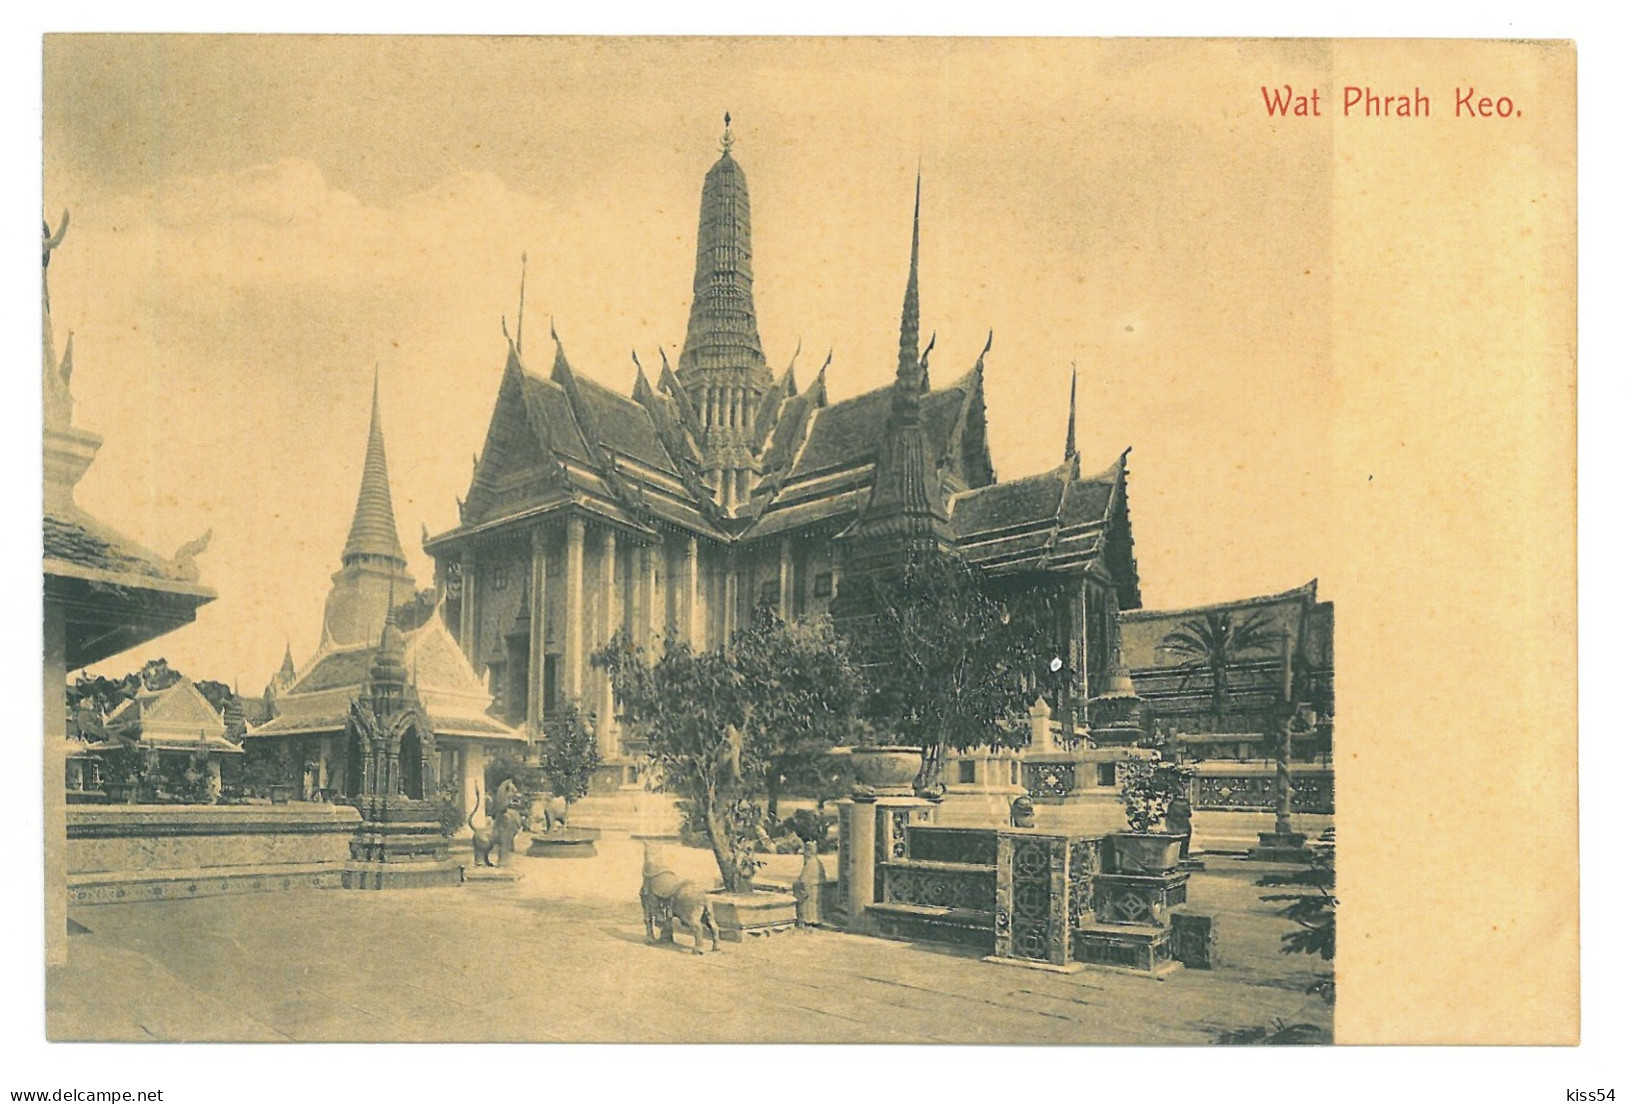 TH 30 - 19825 WAT PHRAH KEO, Thailand - Old Postcard - Unused - Tailandia